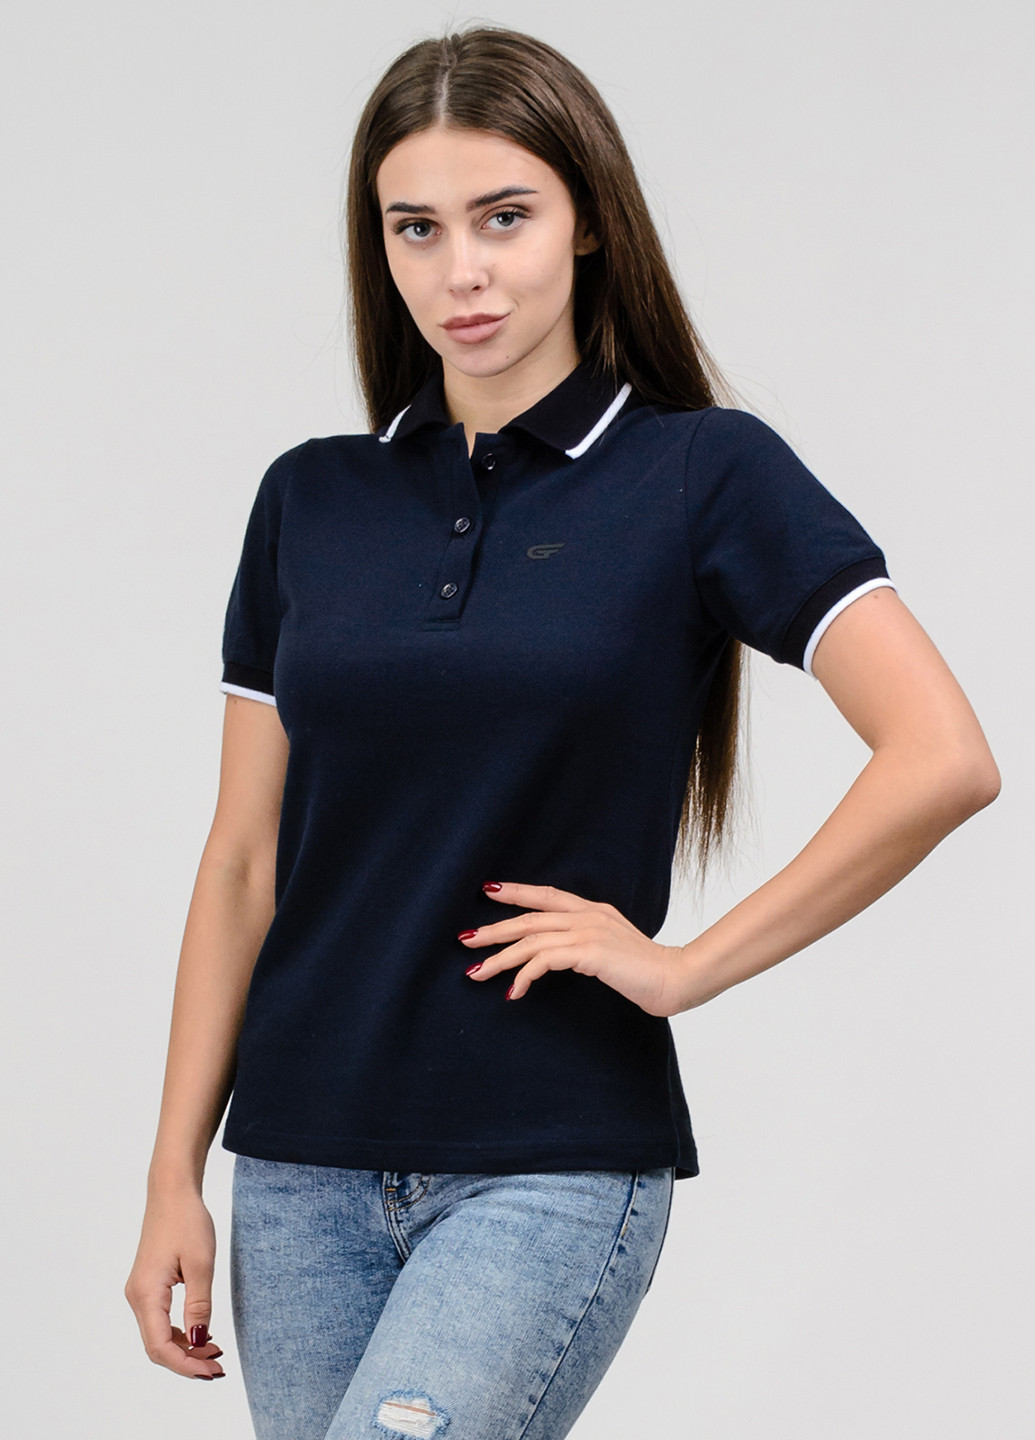 Серо-синяя женская футболка-поло Go Fitness с логотипом